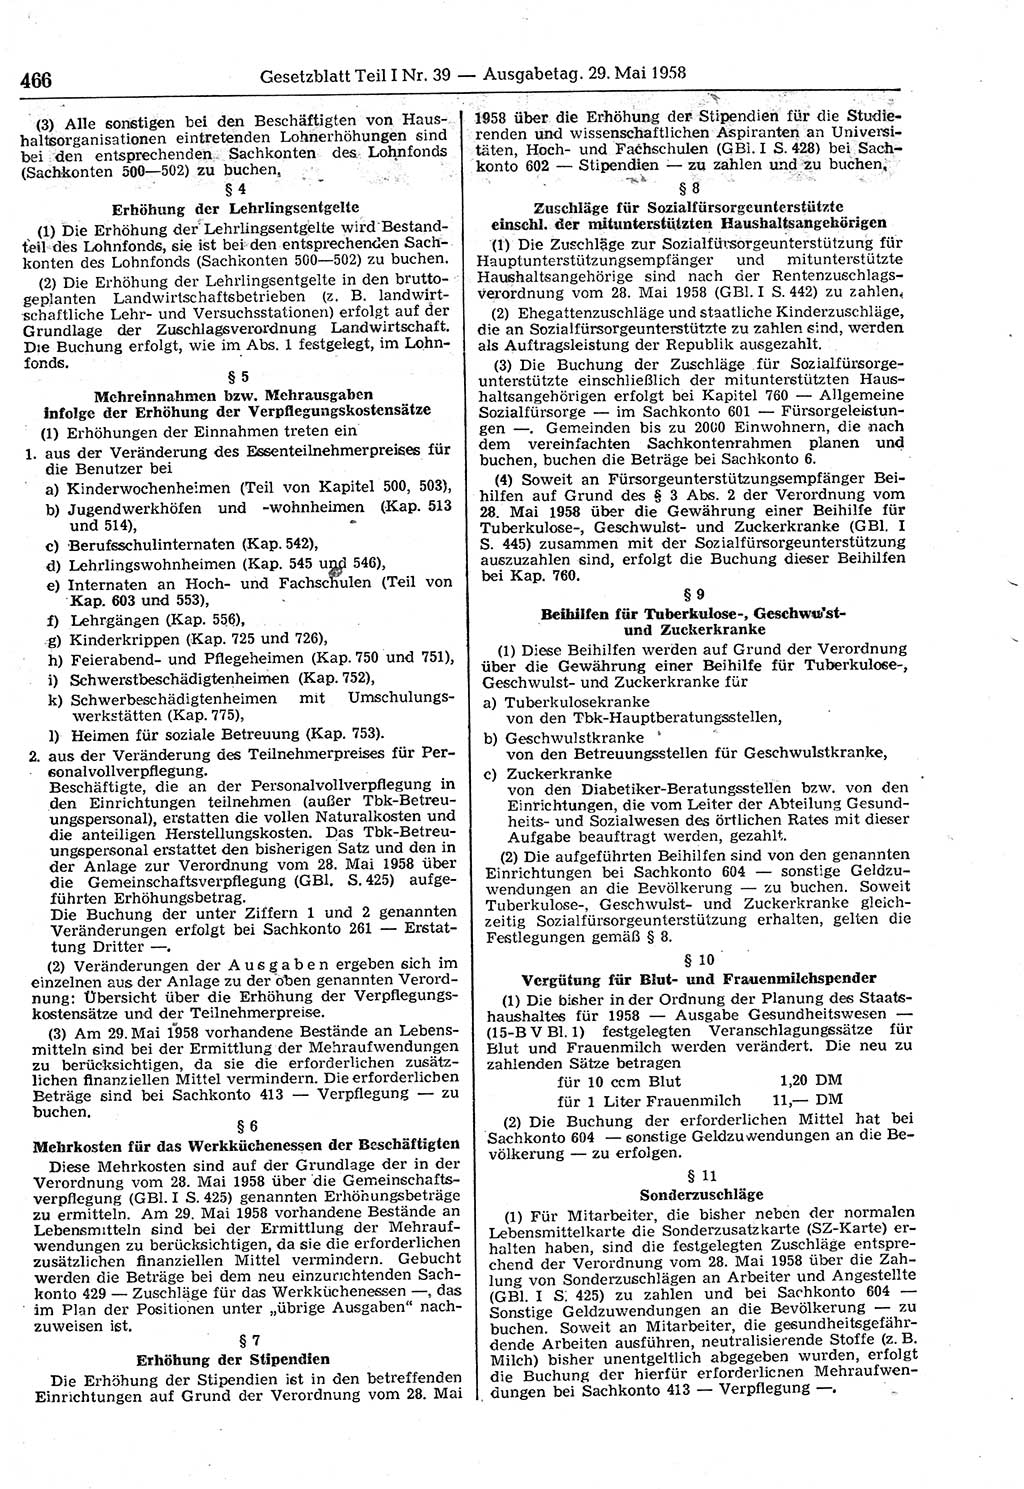 Gesetzblatt (GBl.) der Deutschen Demokratischen Republik (DDR) Teil Ⅰ 1958, Seite 466 (GBl. DDR Ⅰ 1958, S. 466)